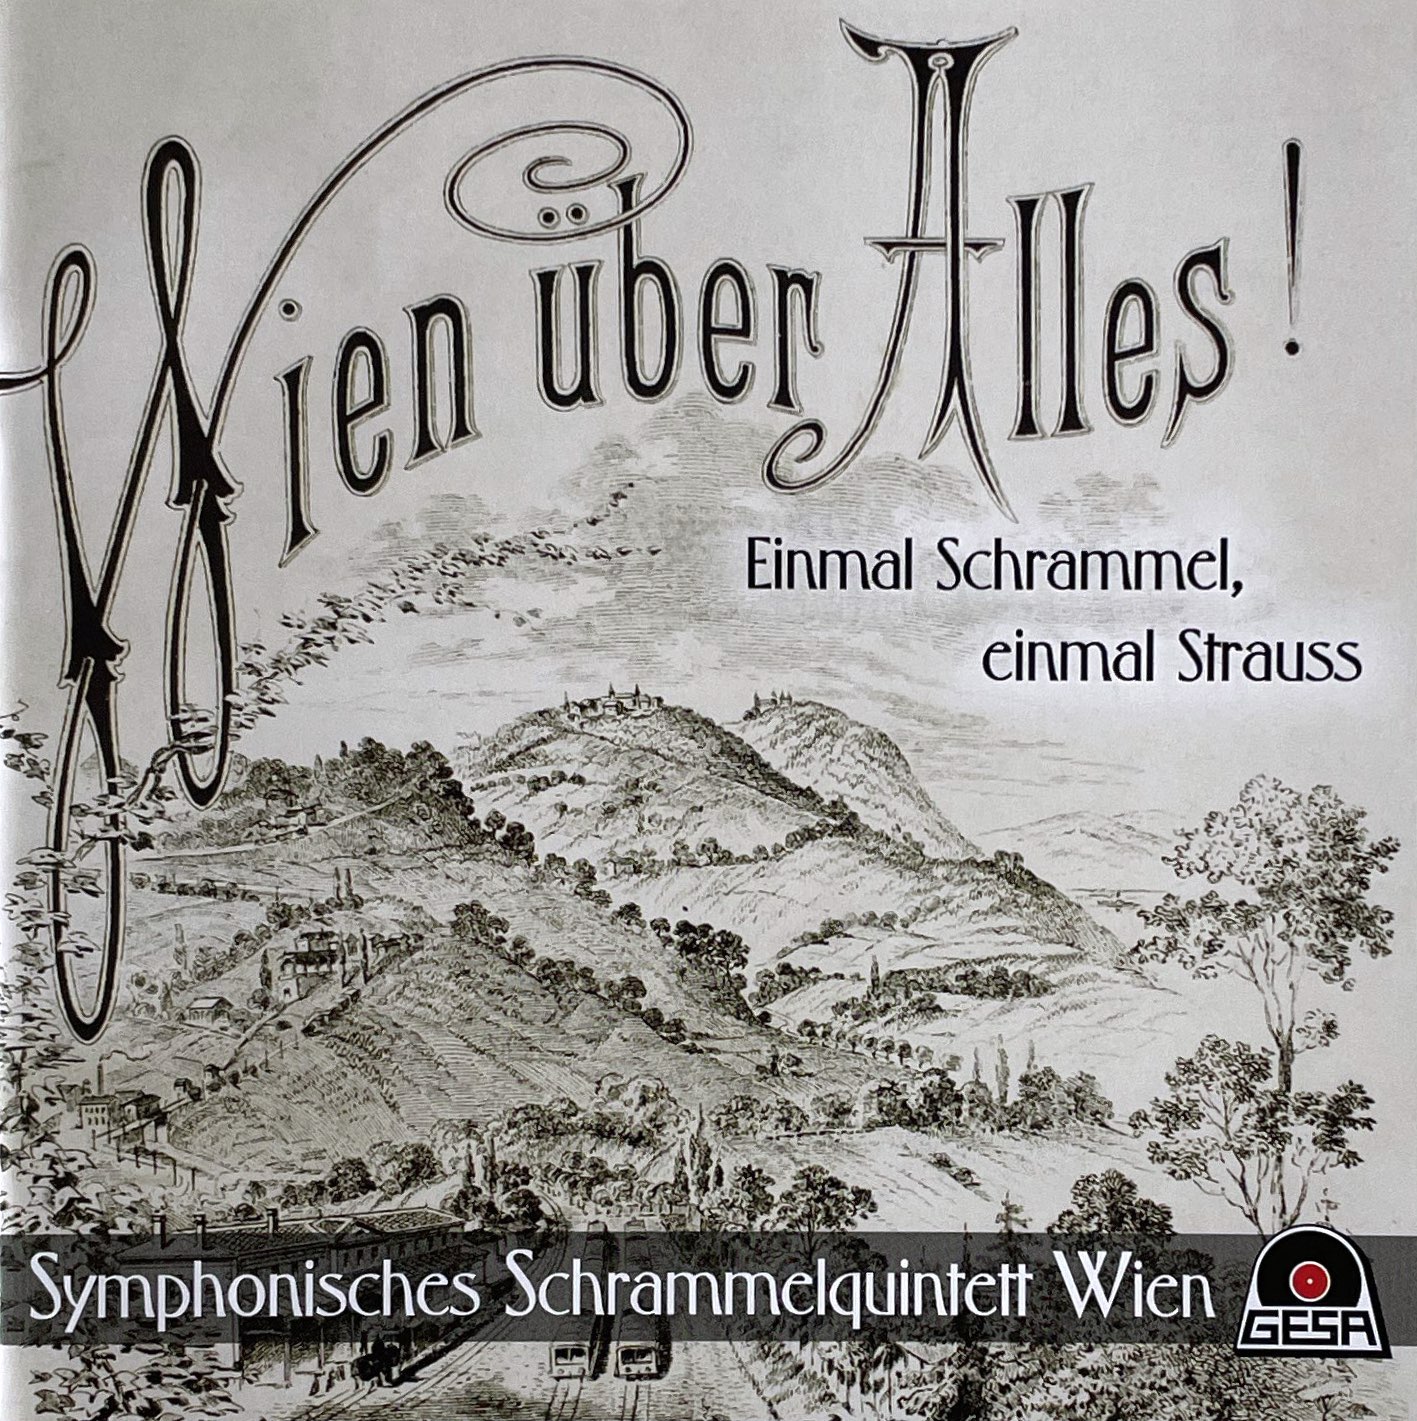 Symphonisches Schrammelquintett Wien – Wien über Alles